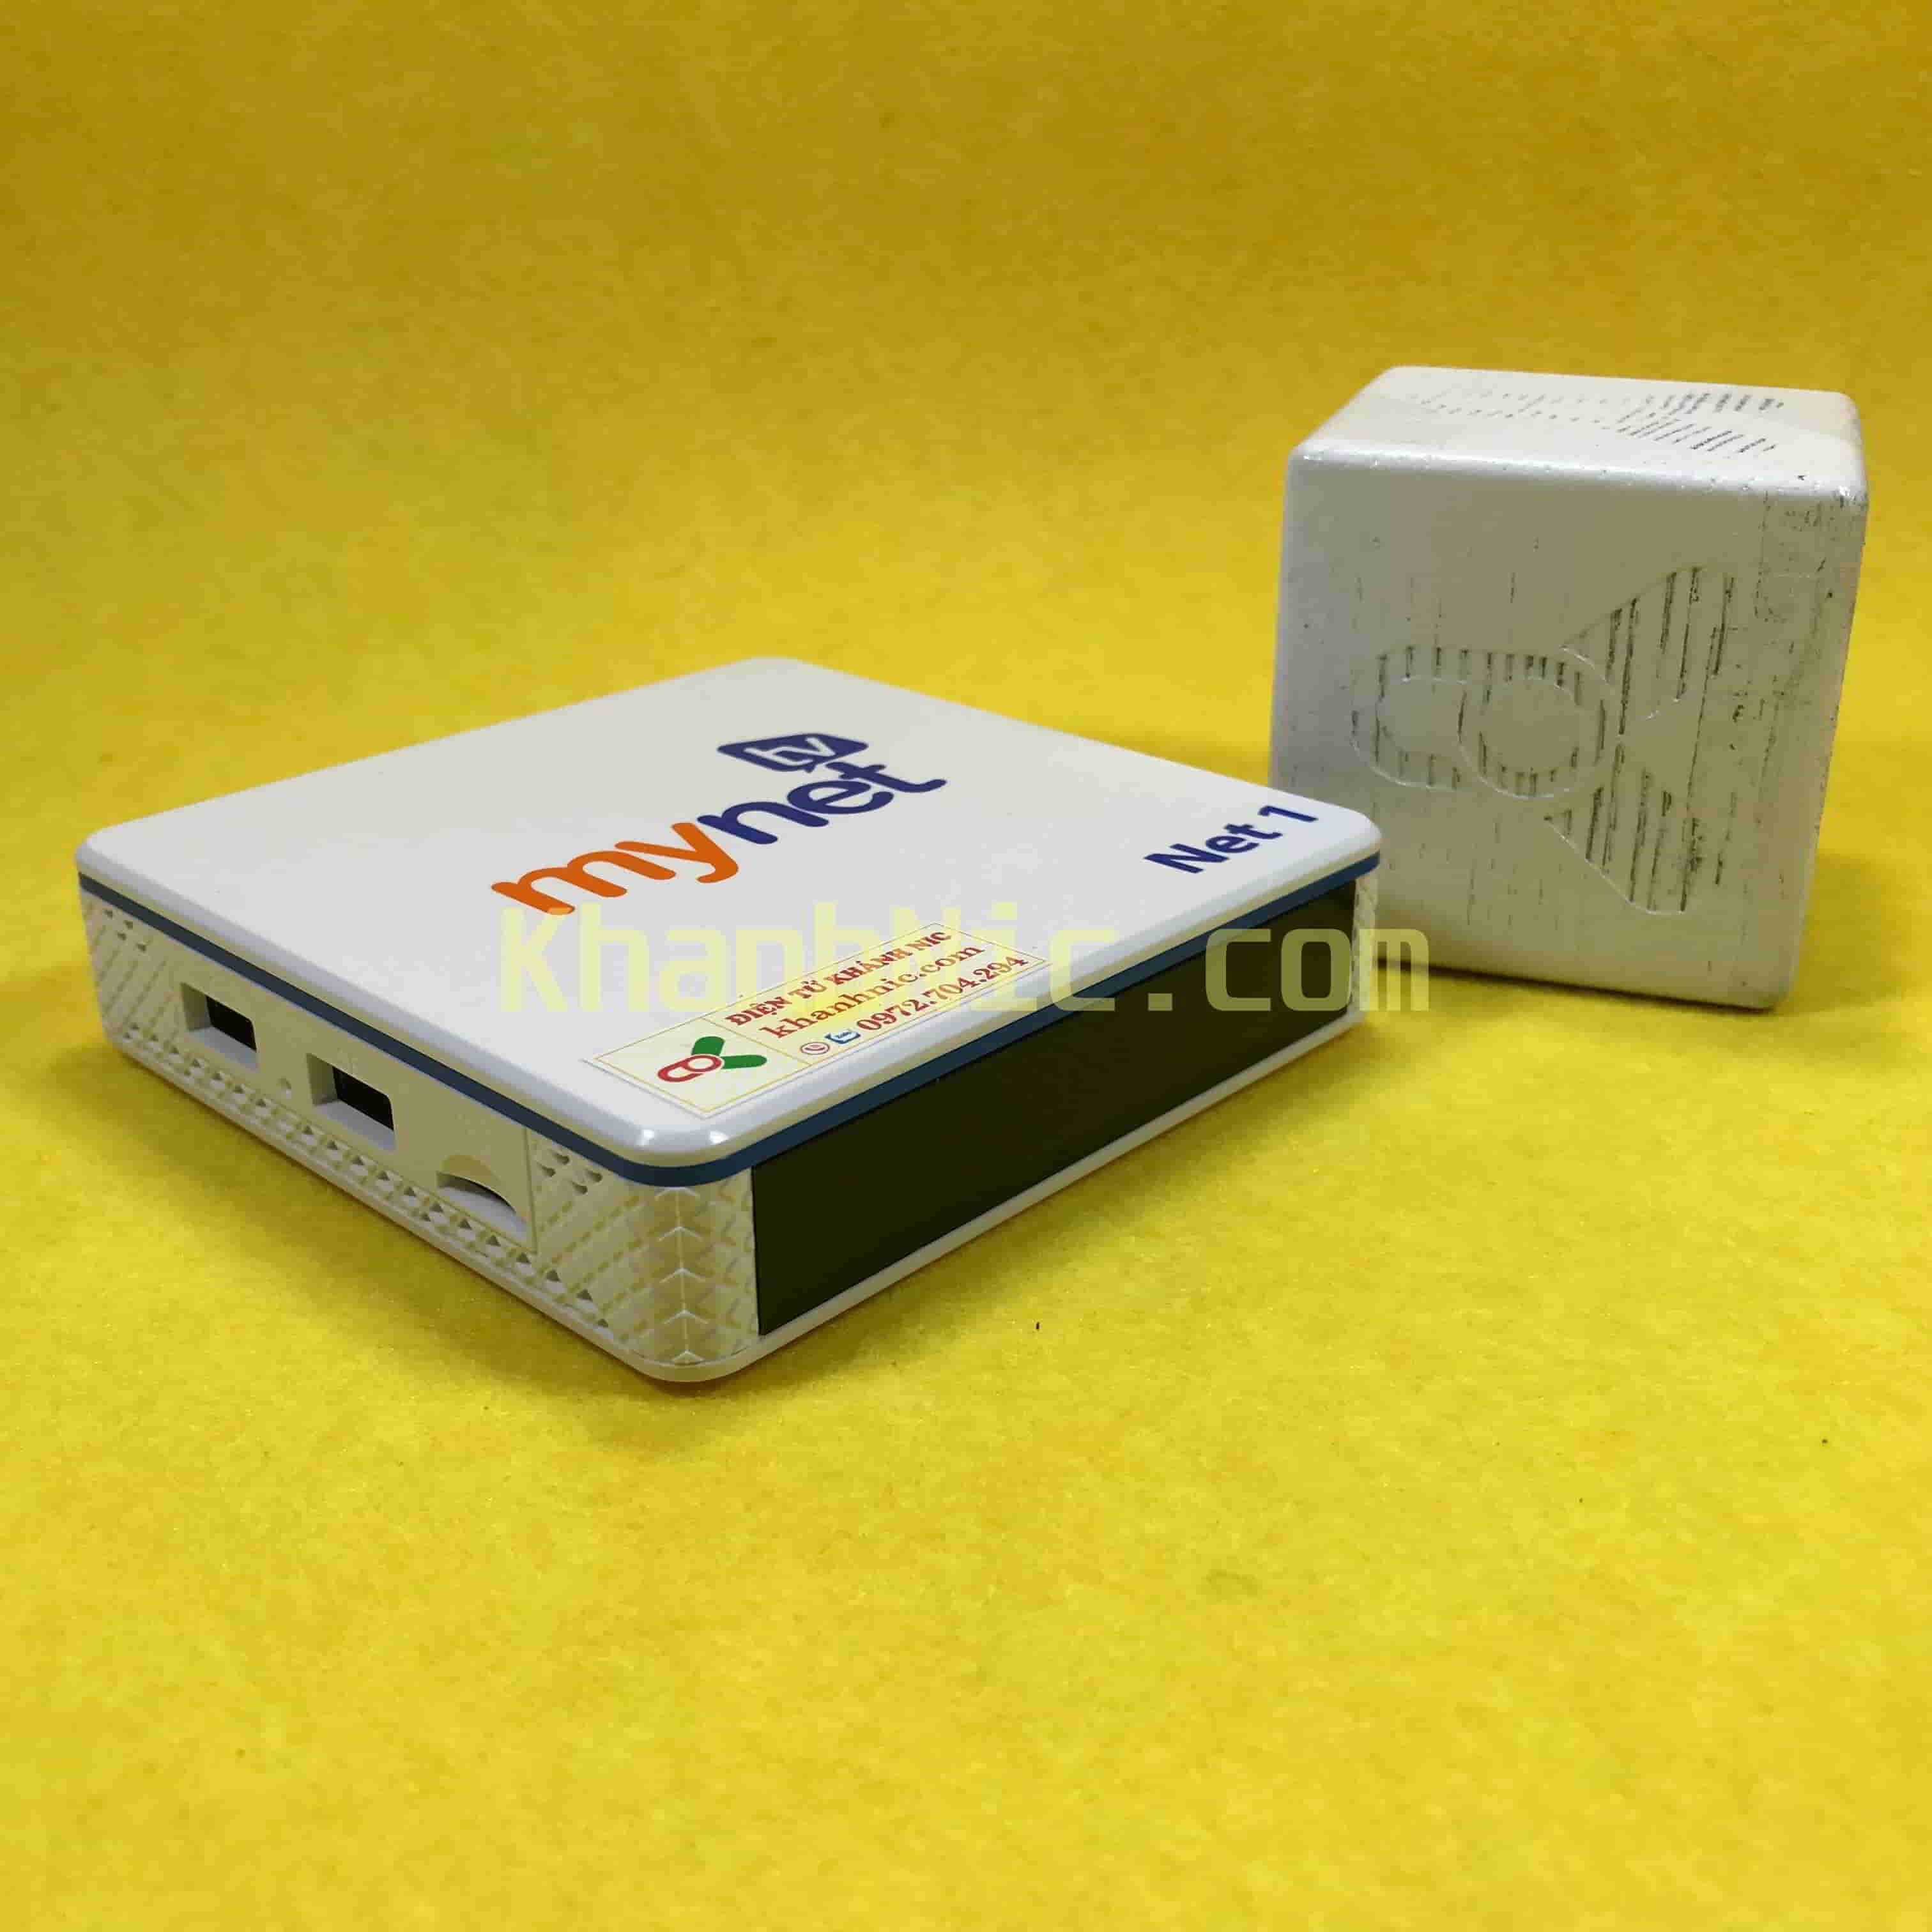 Android TV Box MyTv Net 2H RAM 2GB-Tìm kiếm thông minh bằng giọng nói 